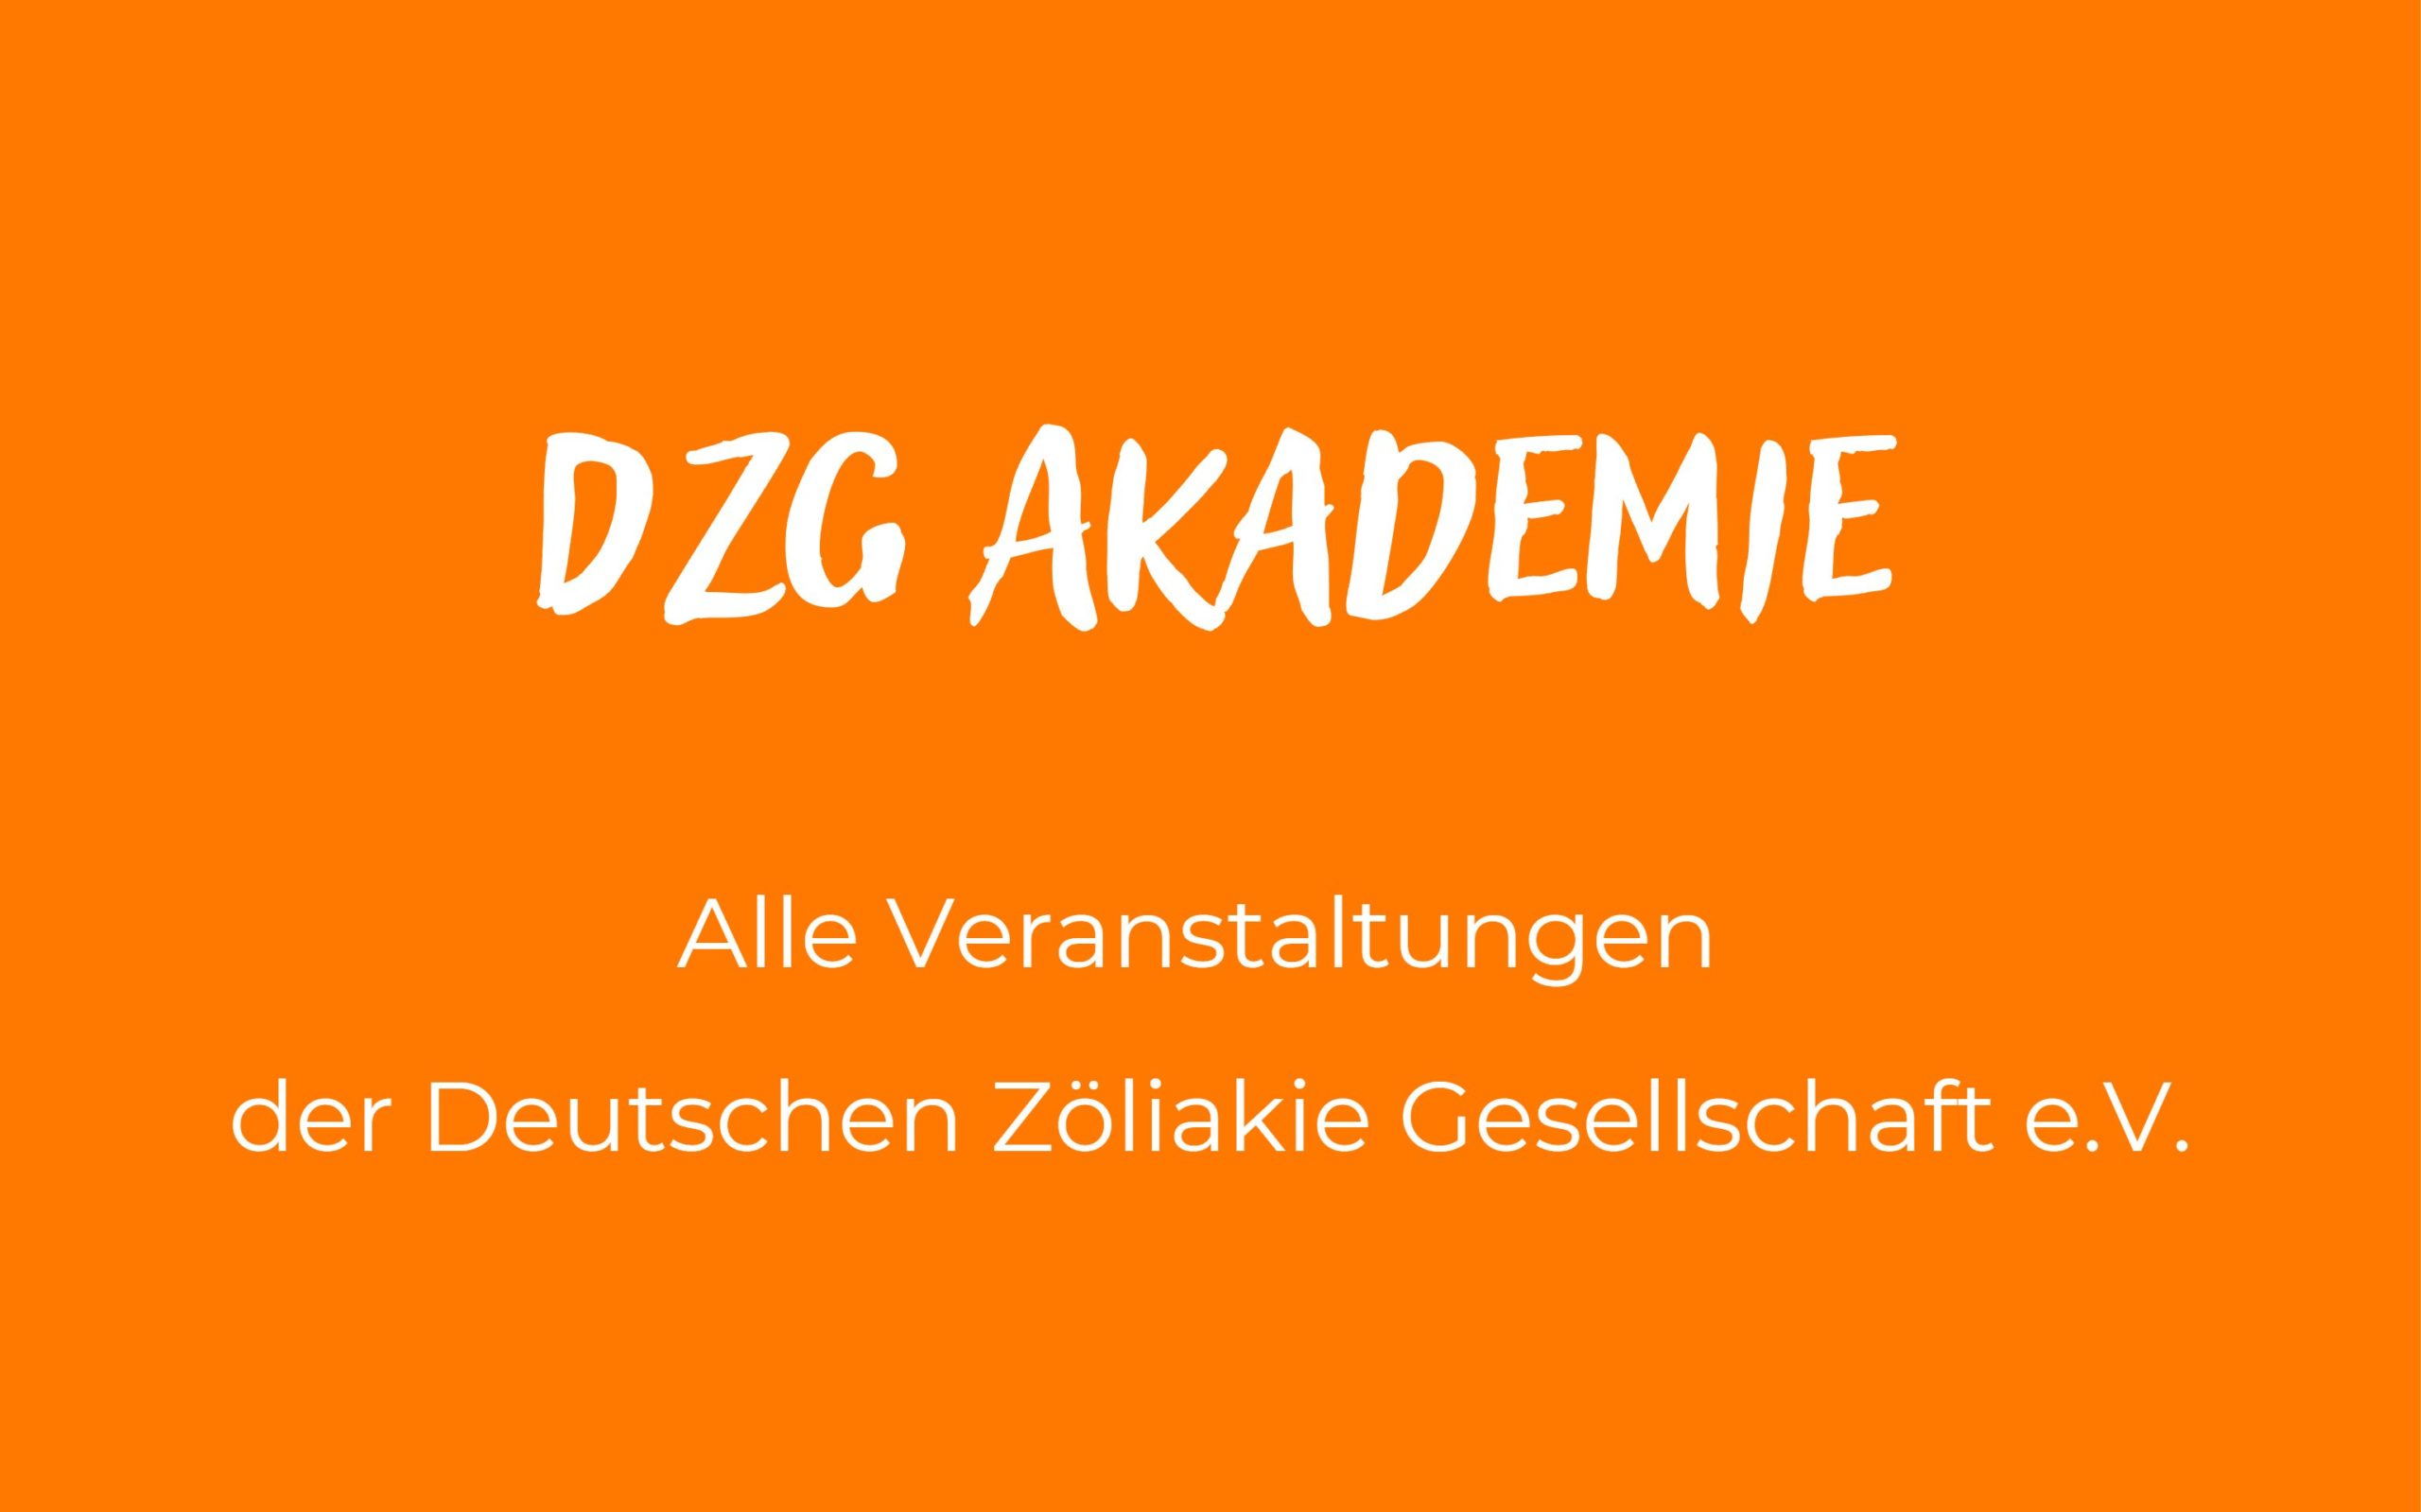 DZG Akademie - Veranstaltungen